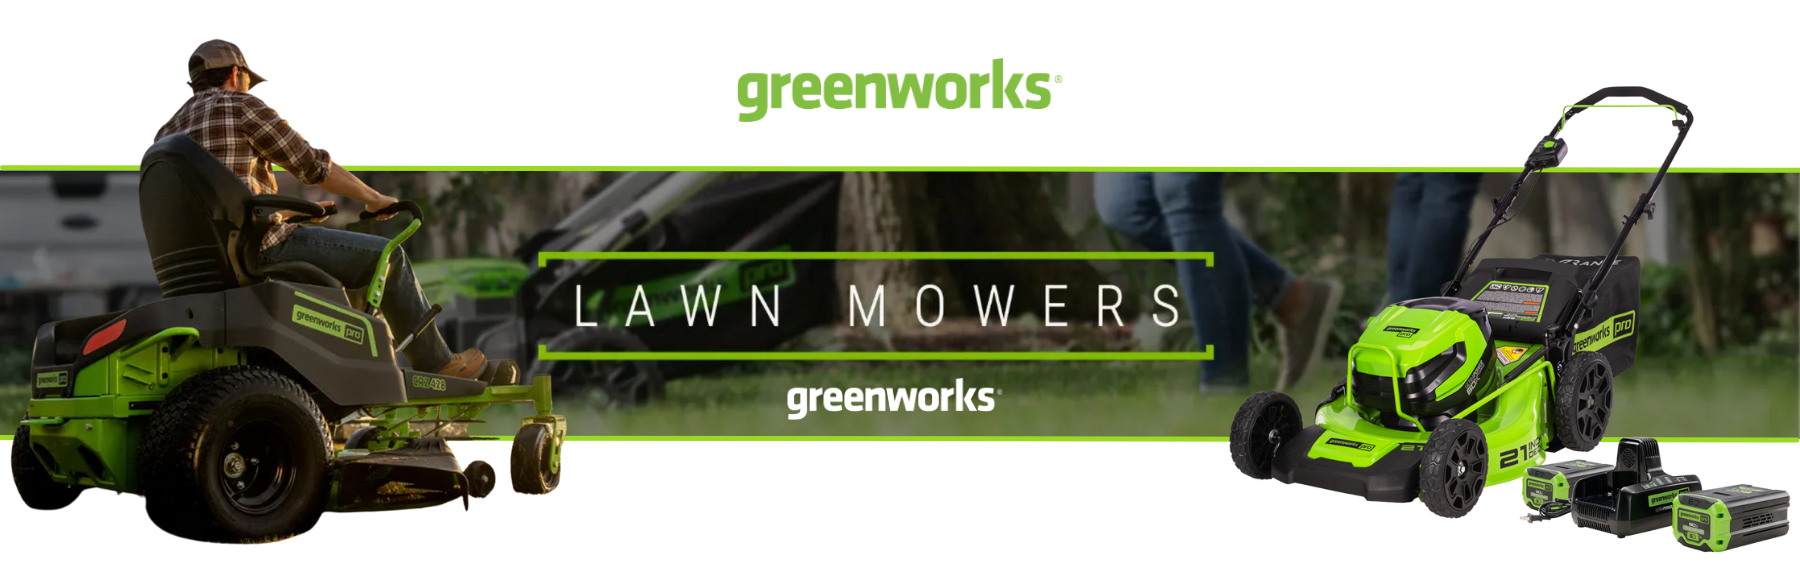 Greenworks Lawnmowers at TWP Motorsports